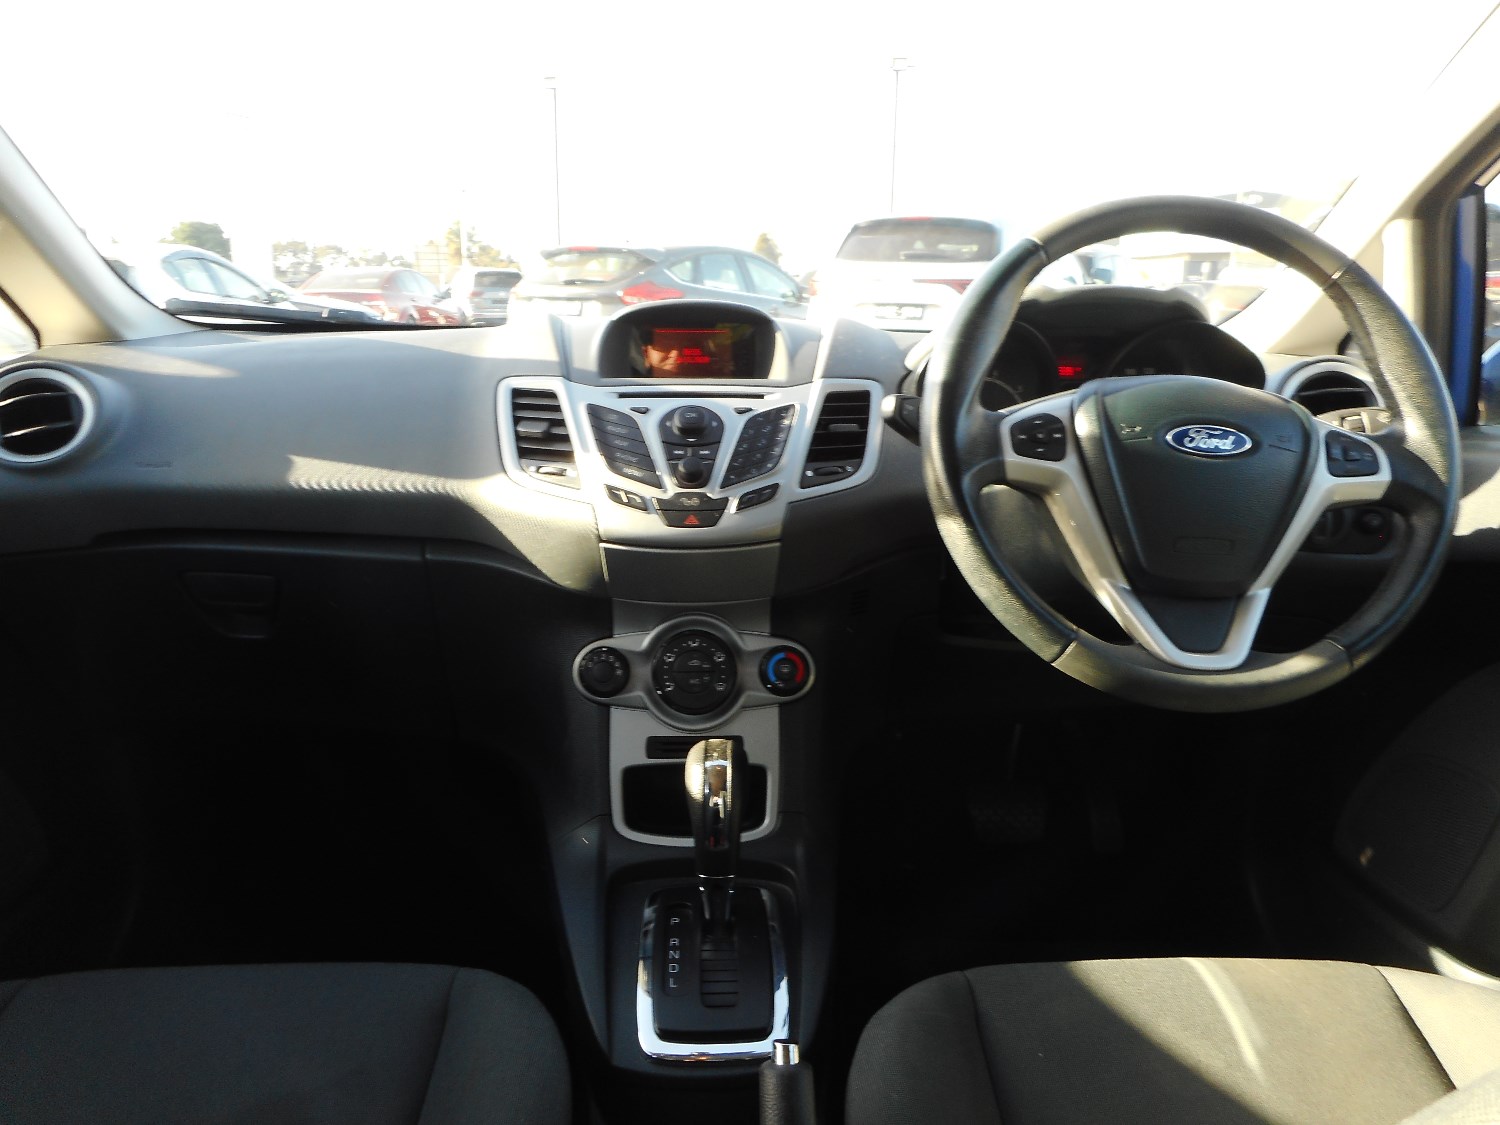 2012 Ford Fiesta WT LX Hatchback Image 14